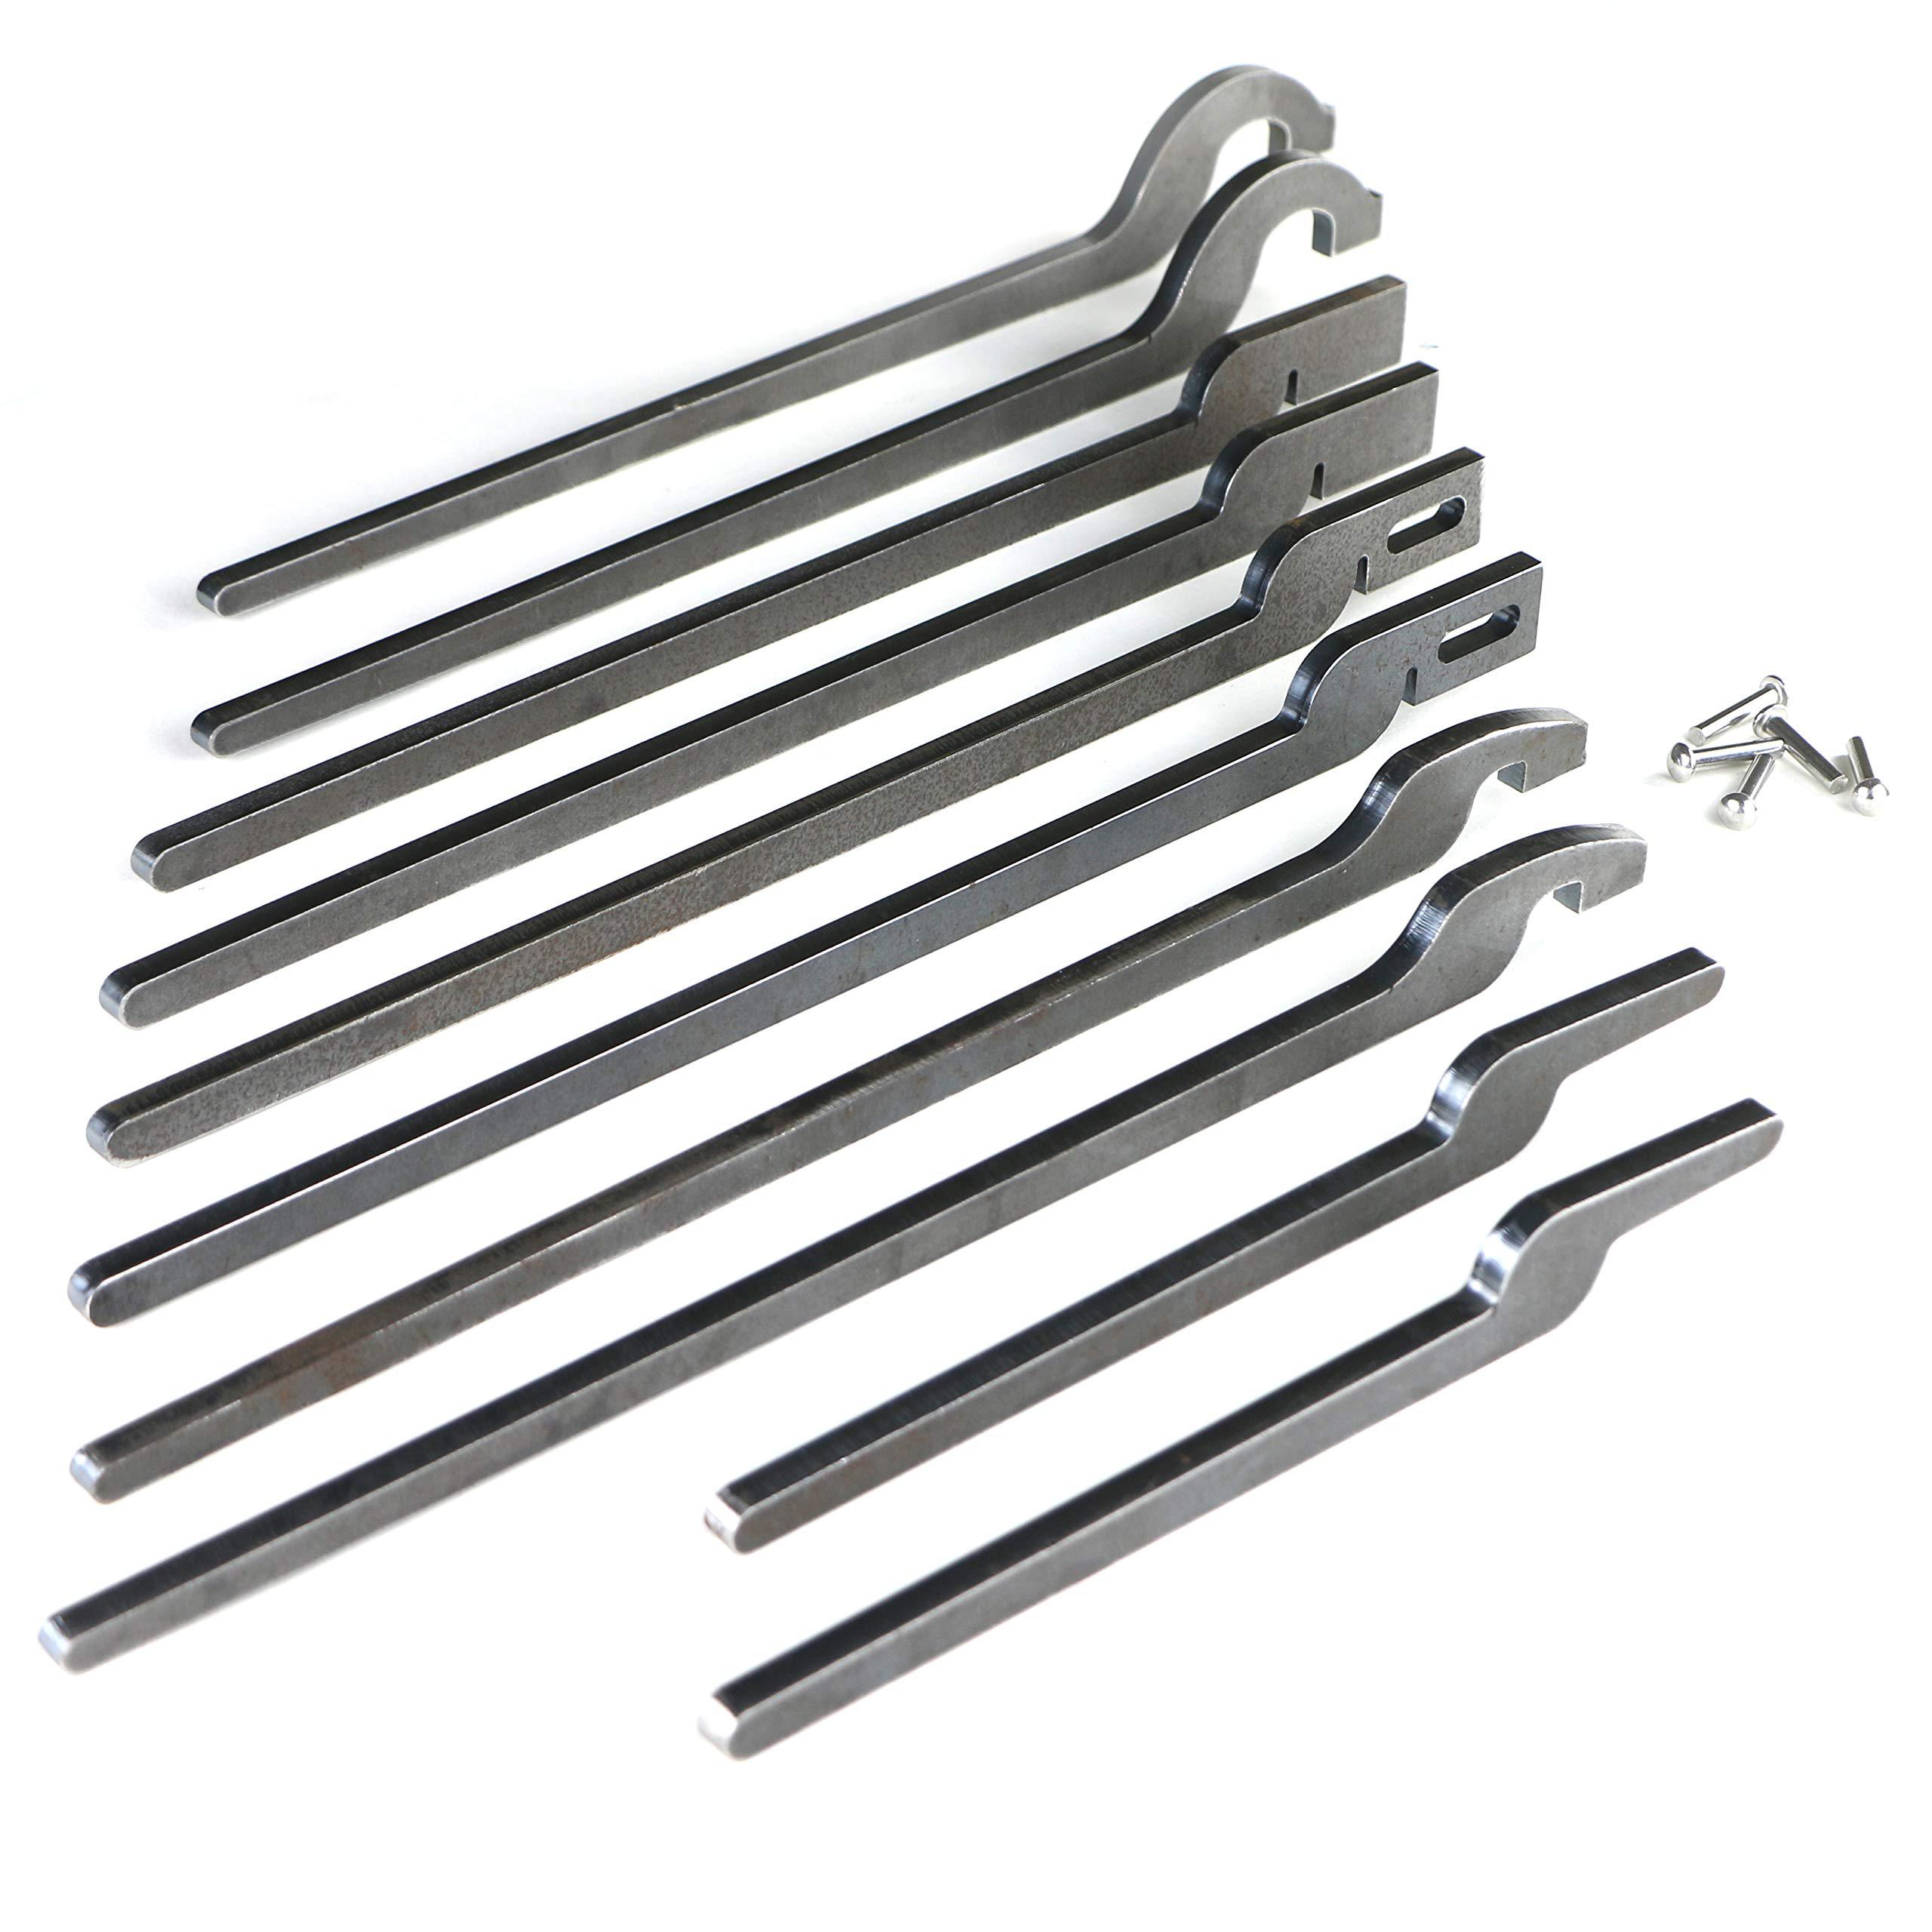 Topsair rapid tongs bundle set five types of diy blacksmith tongs rapid tongs bundle kit with stainless steel rivet